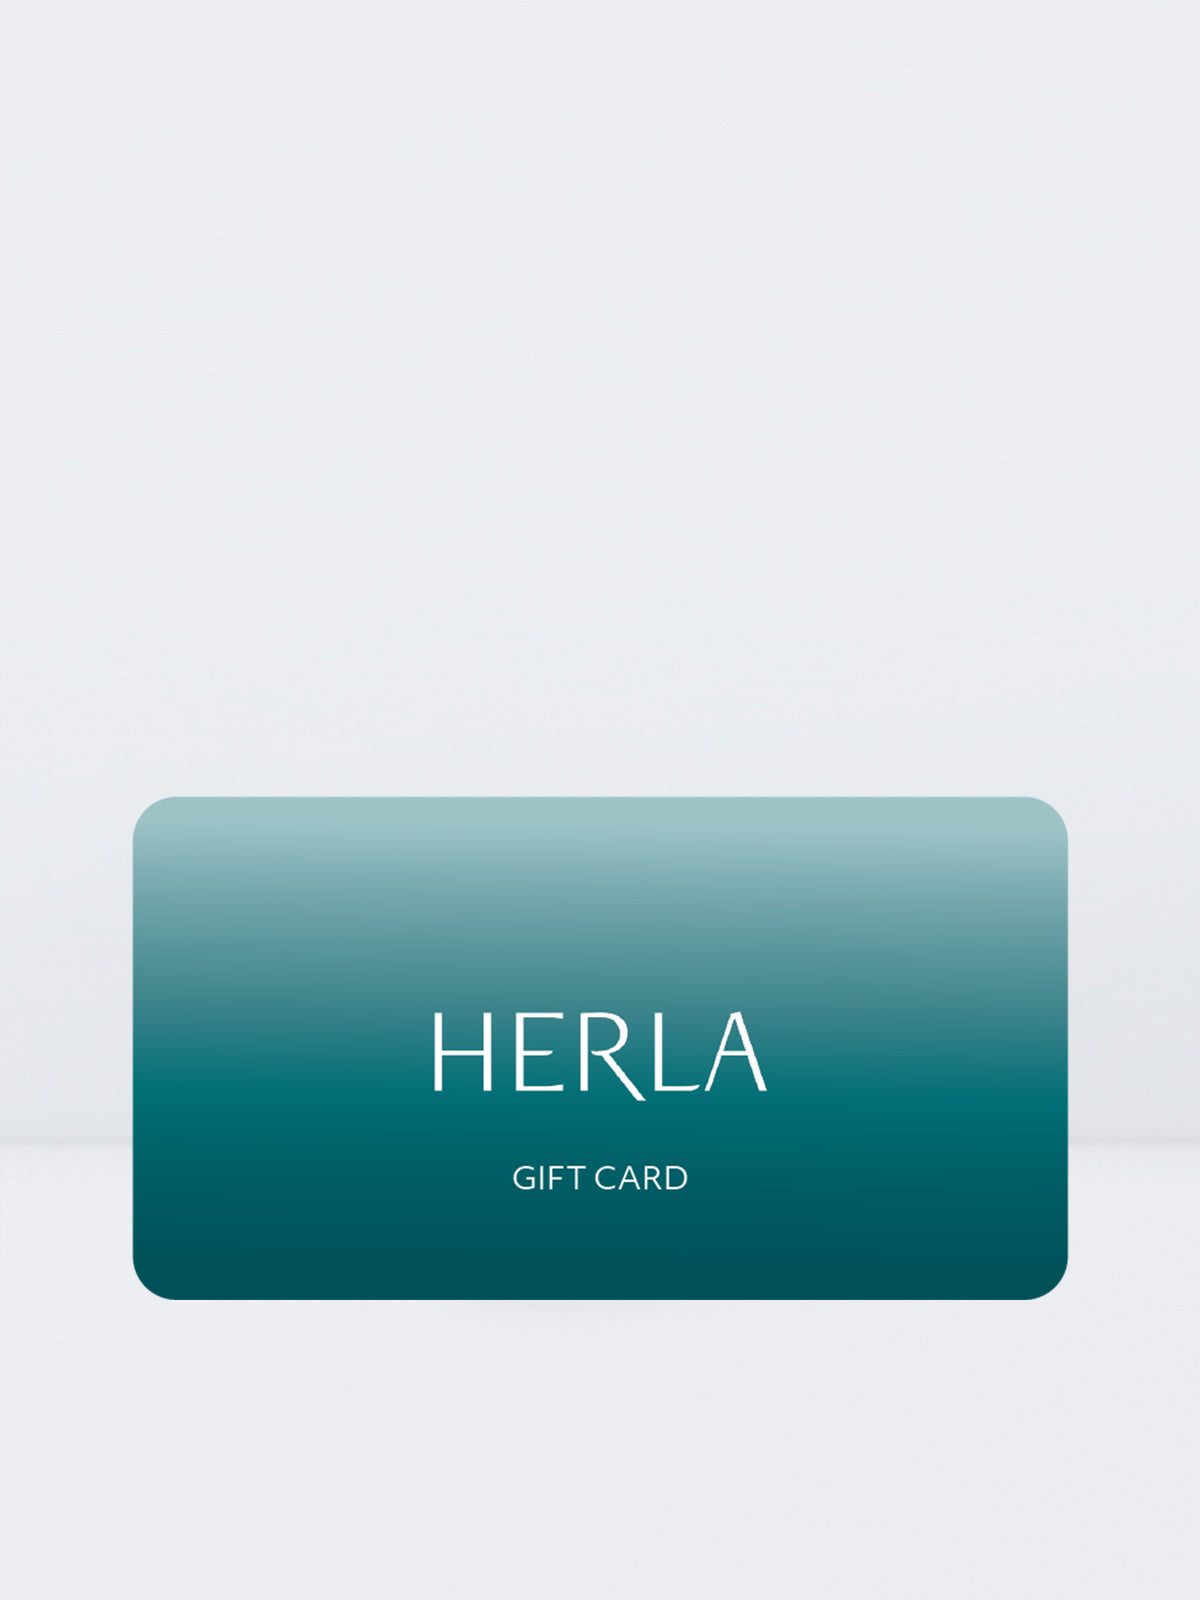 HERLA digital gift card